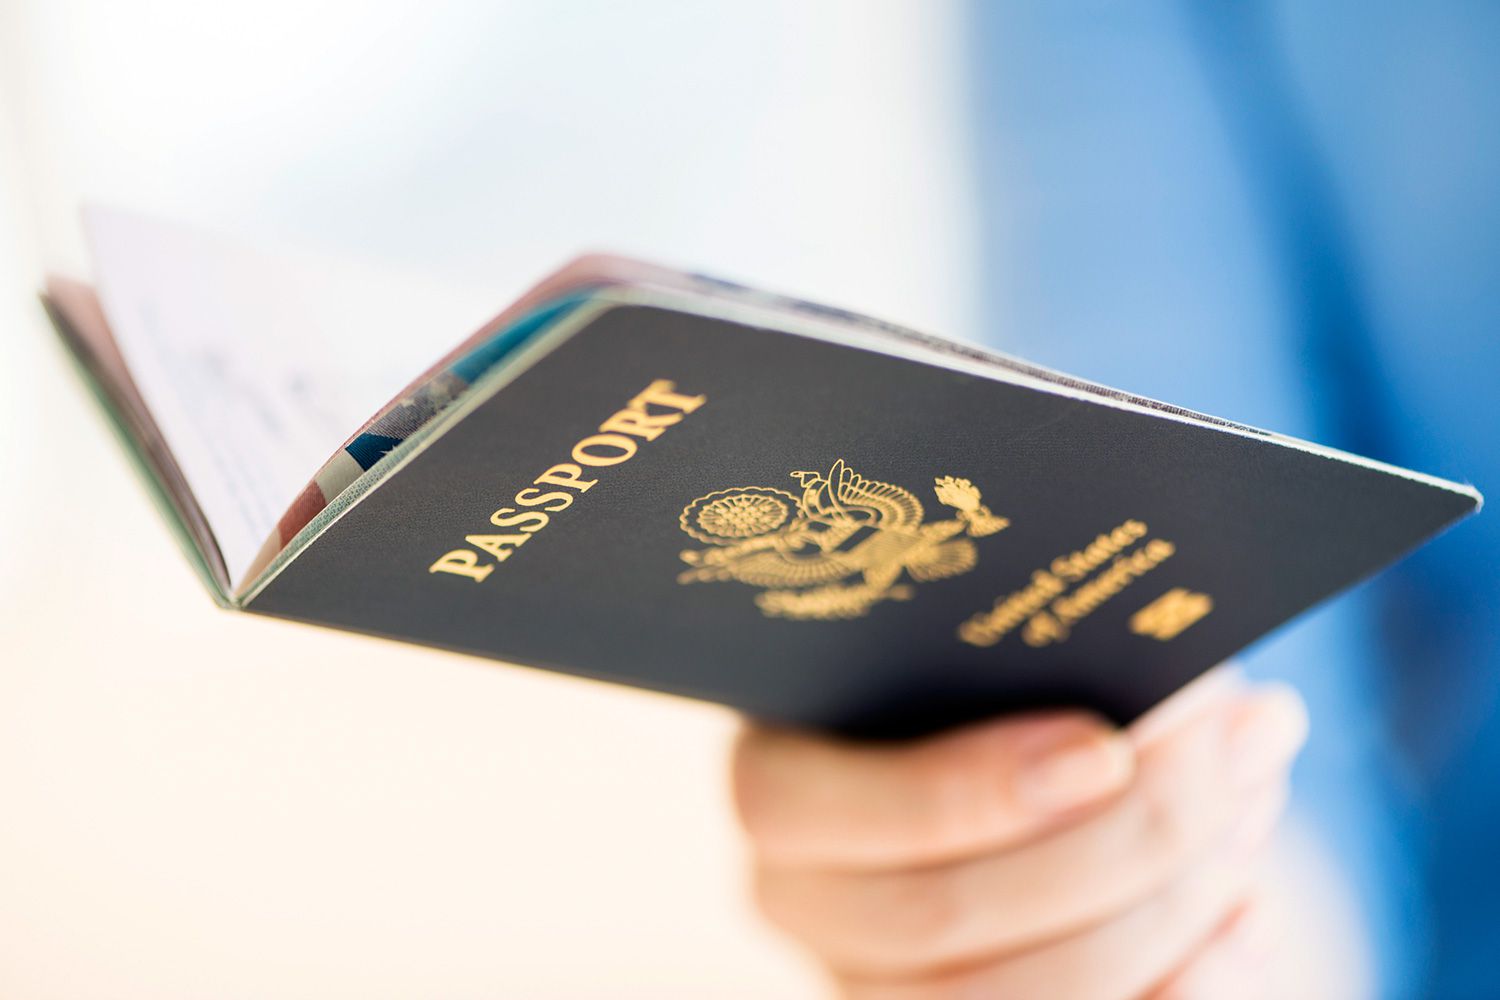 Cómo hacer la Obtención o renovación de pasaporte en Estados Unidos